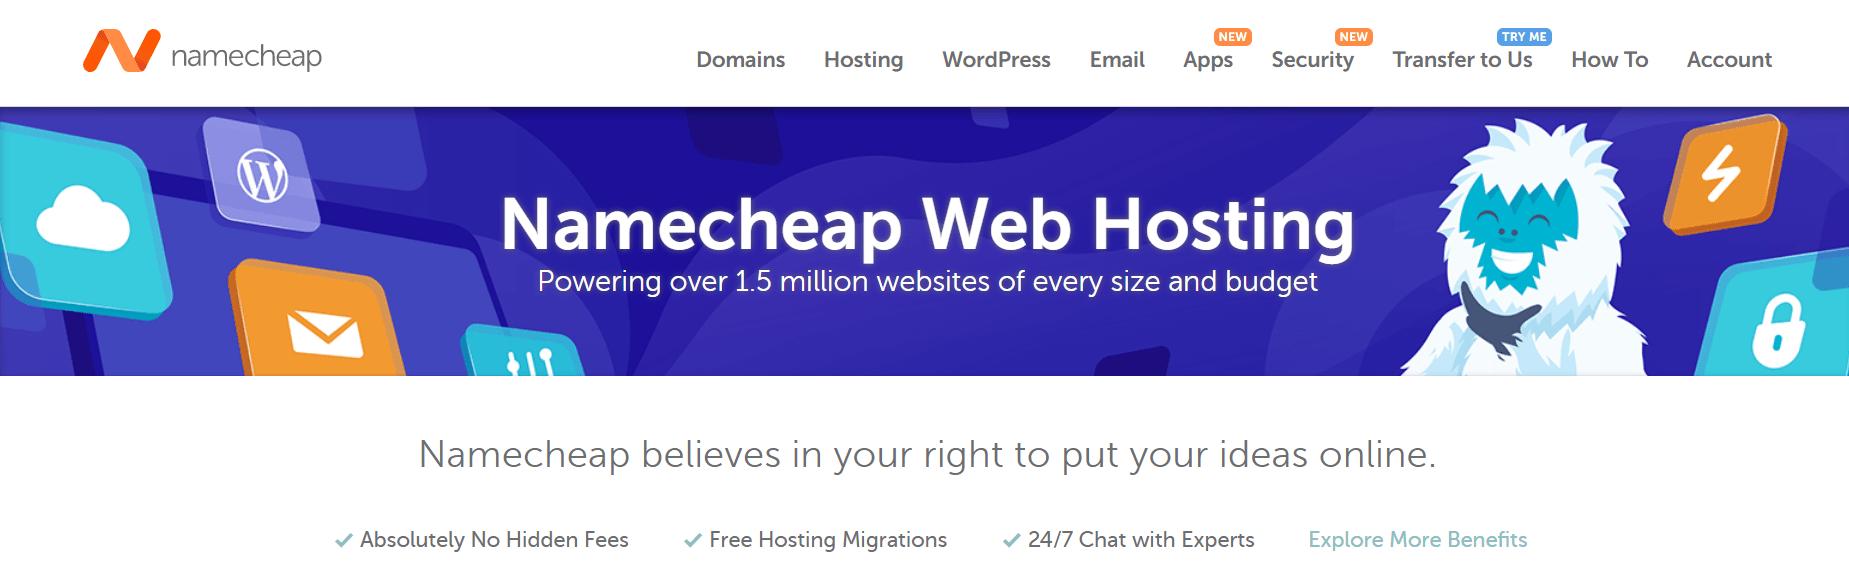 域名与Web托管：Namecheap同时提供